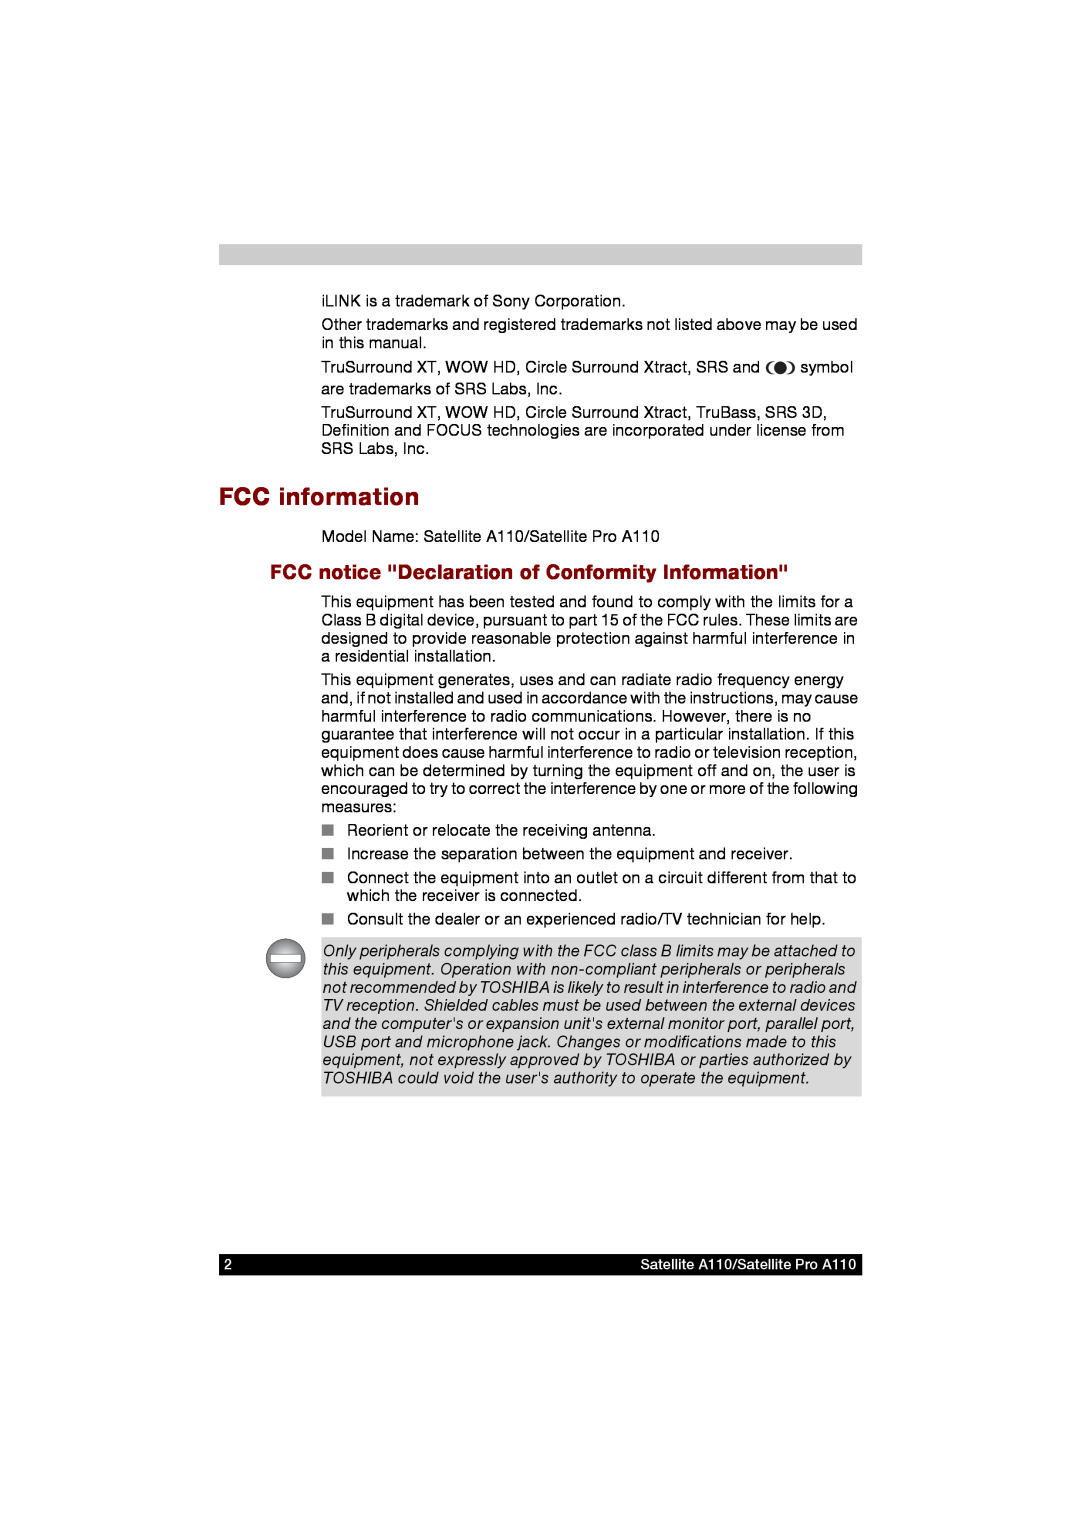 Toshiba A110 user manual FCC information, FCC notice Declaration of Conformity Information 